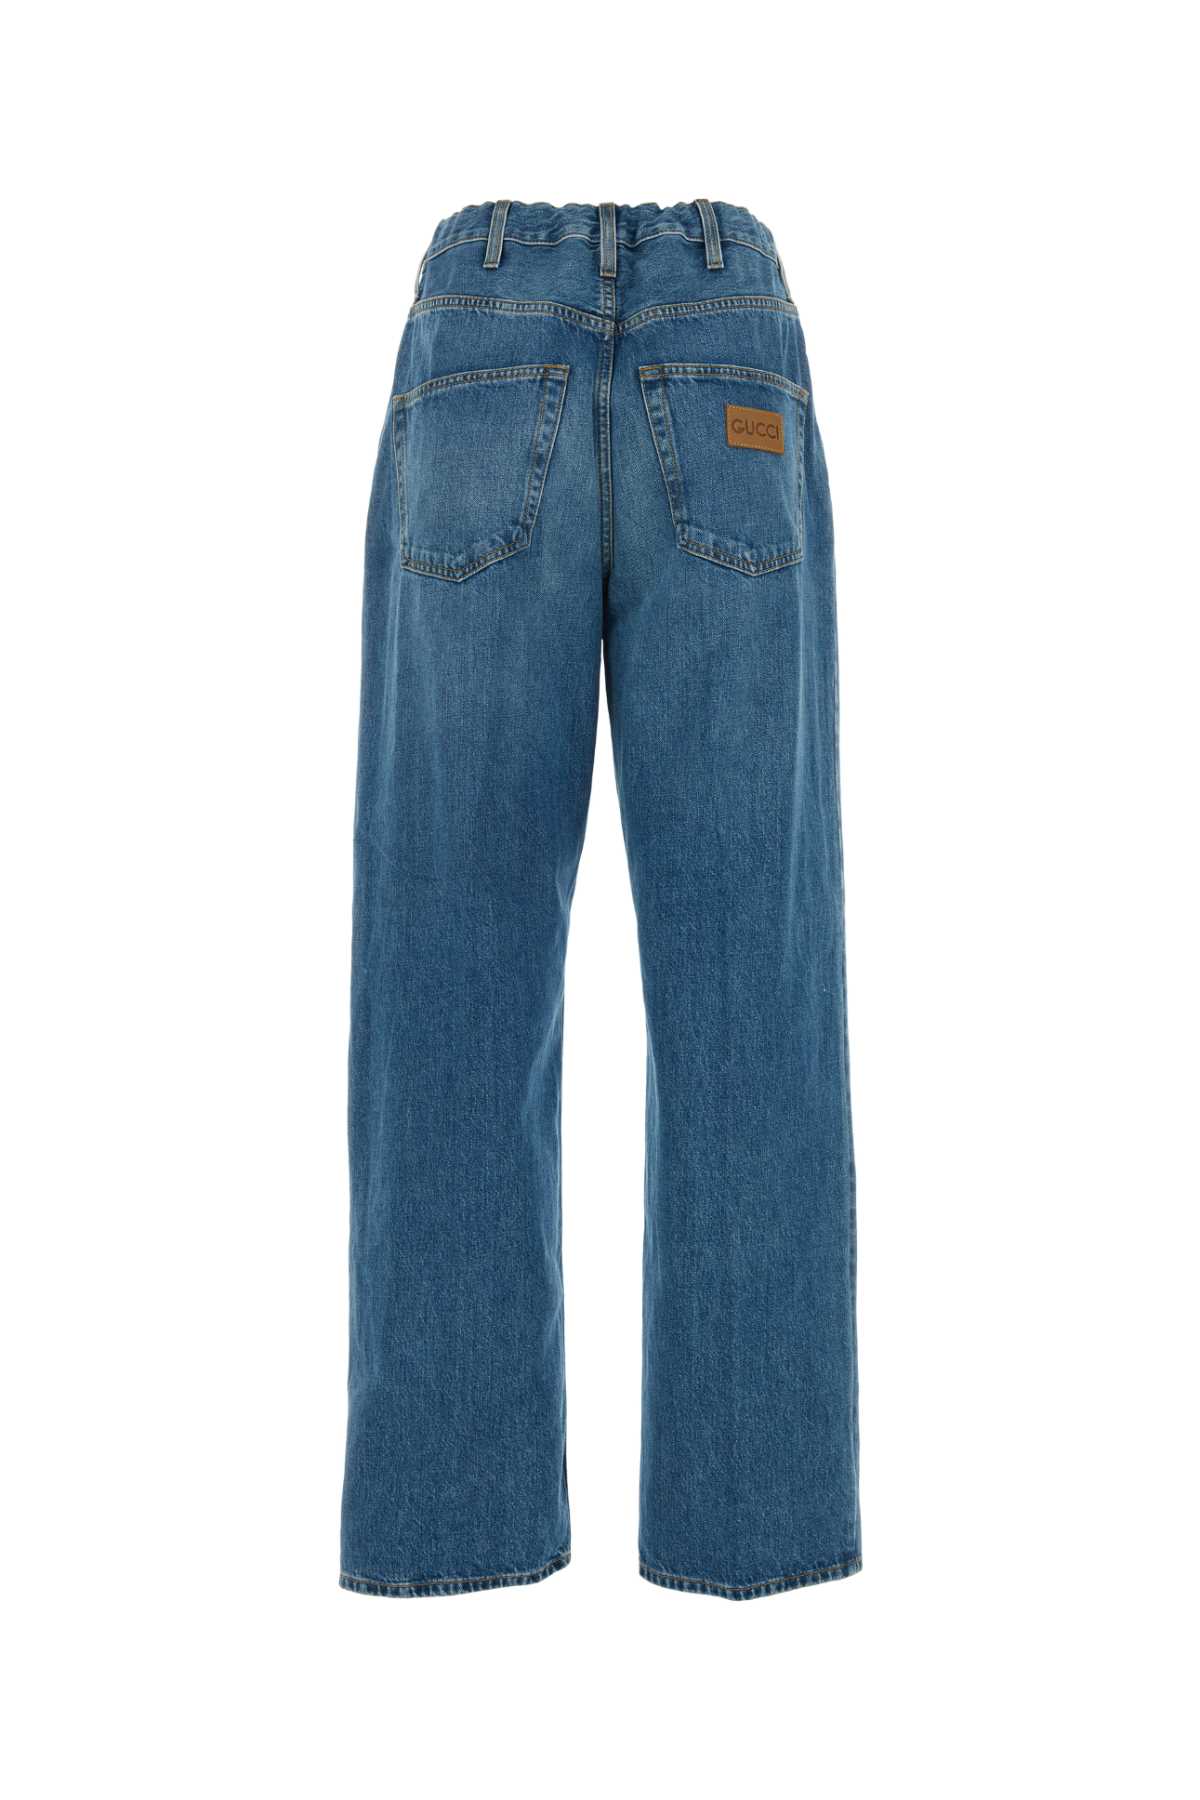 Gucci Denim Jeans In 4011